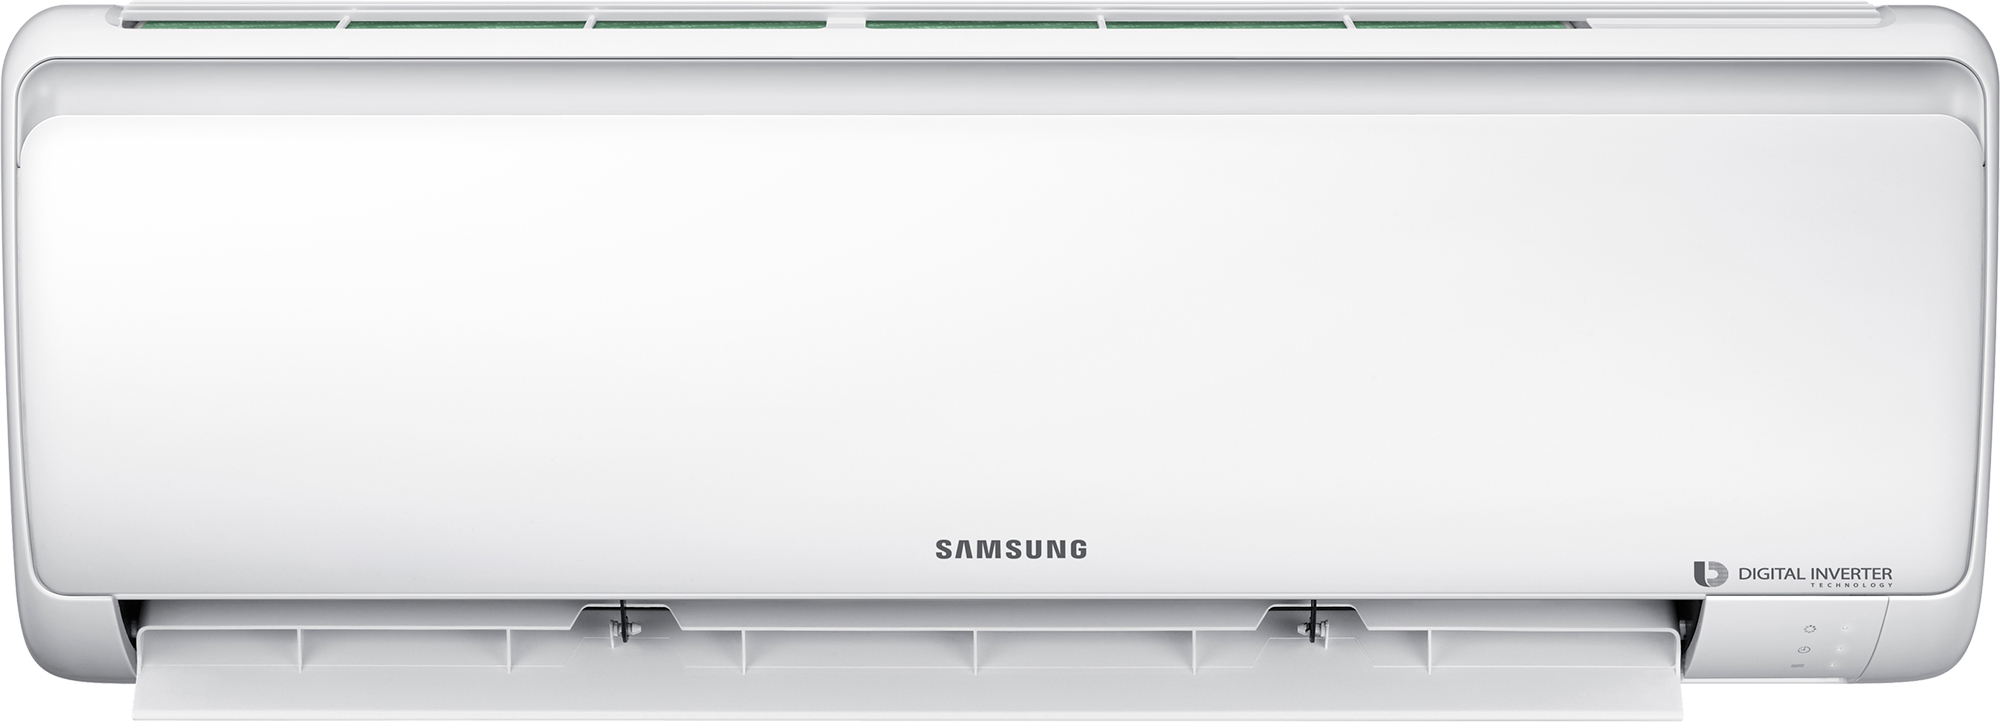 Кондиционер сплит-система Samsung AR24RSFPAWQNER / AR24RSFPAWQXER цена 0.00 грн - фотография 2